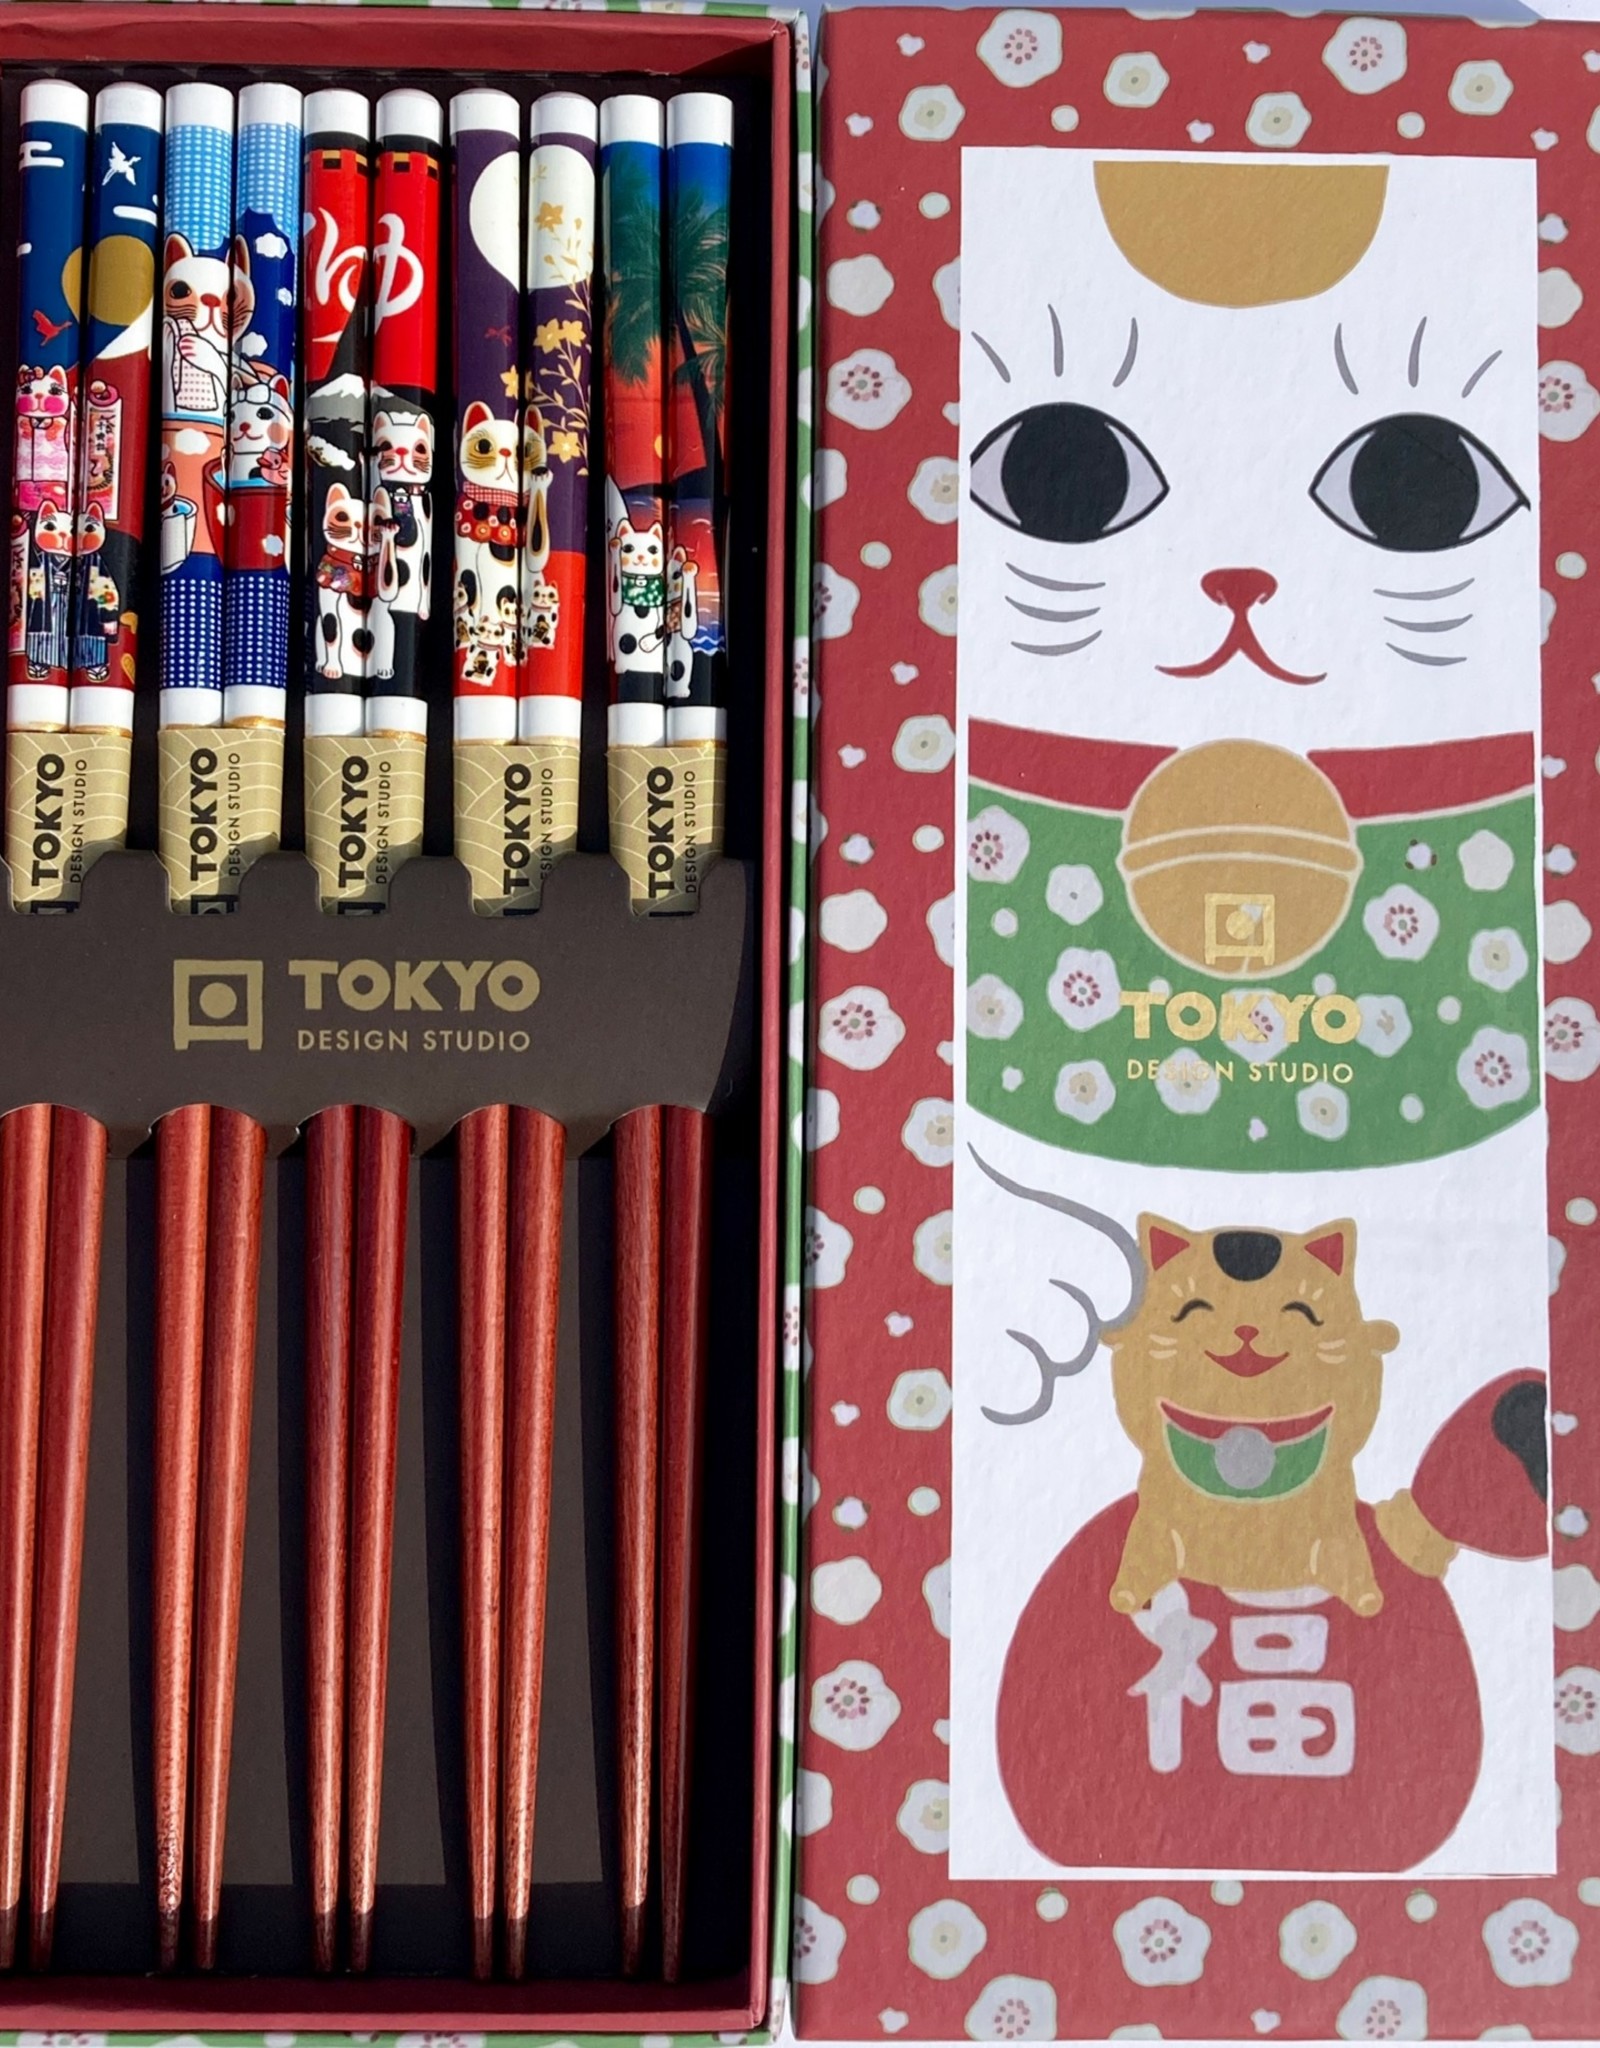 Chopsticks Maneki Neko (lucky cat)